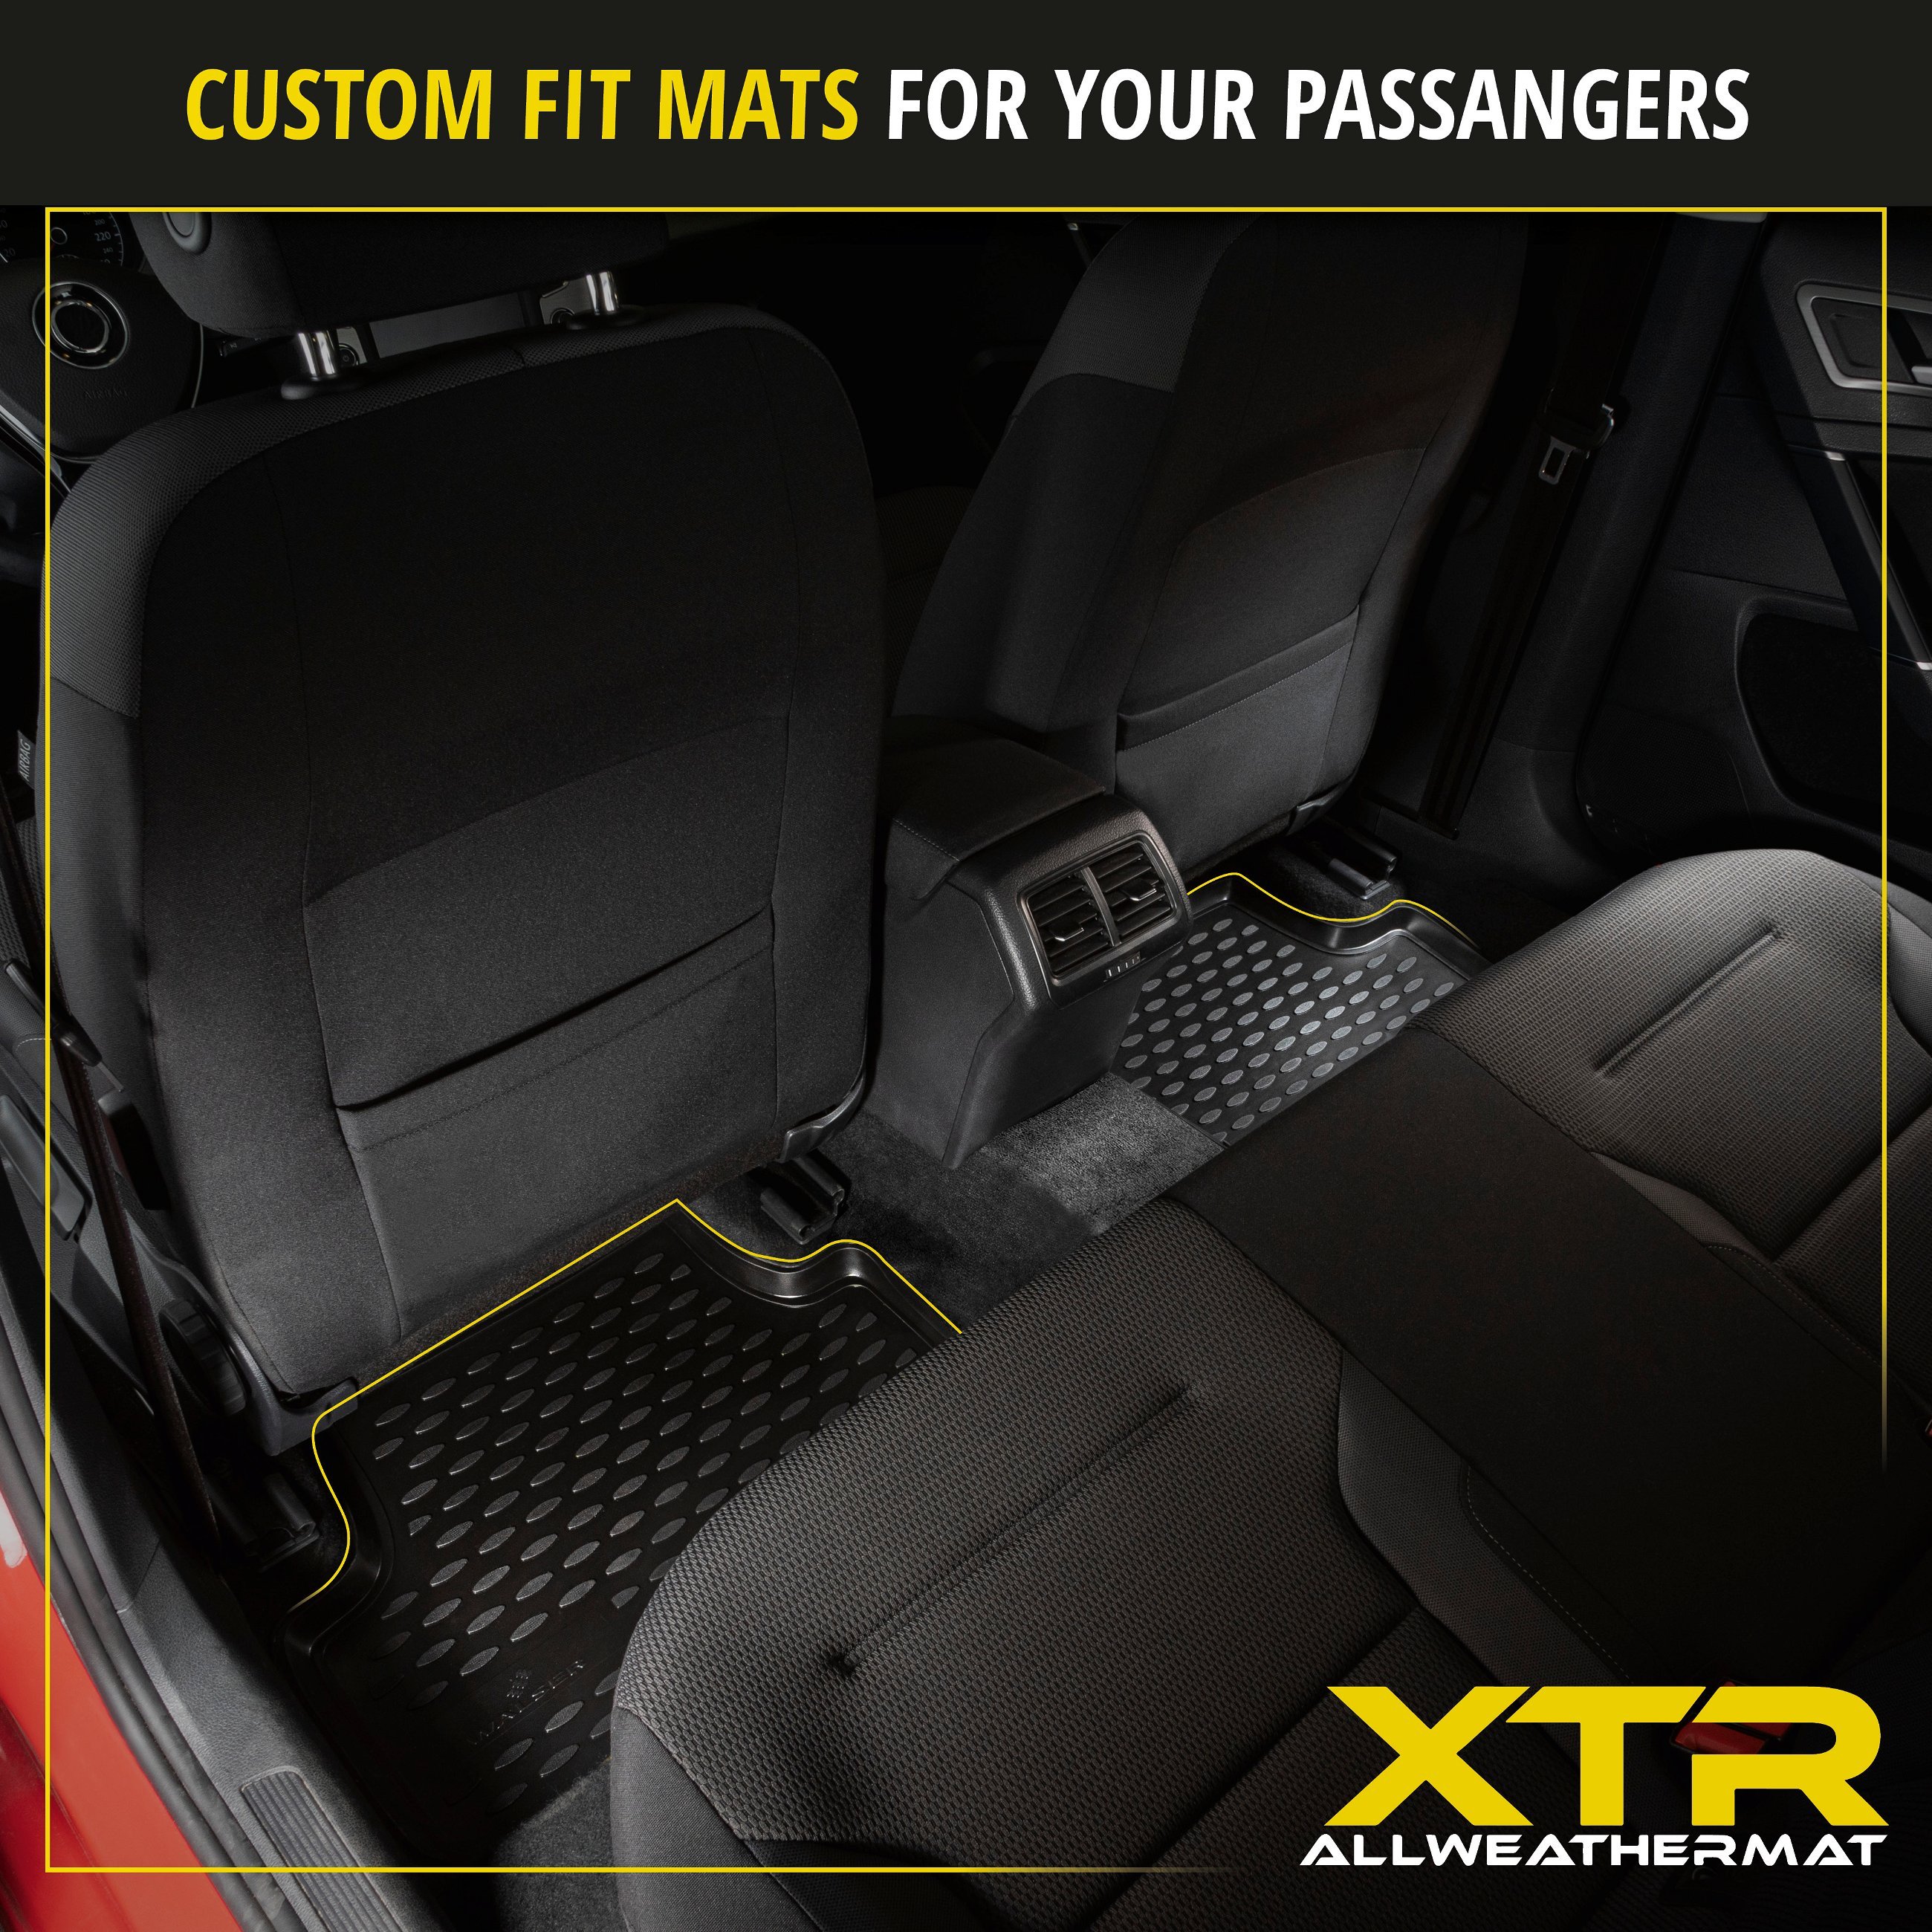 XTR Rubber Mats for mit Audi A4 08/2007 - 12/2015, A4 Avant 11/2007 - 12/2015, A4 Allroad 04/2009 - 05/2016